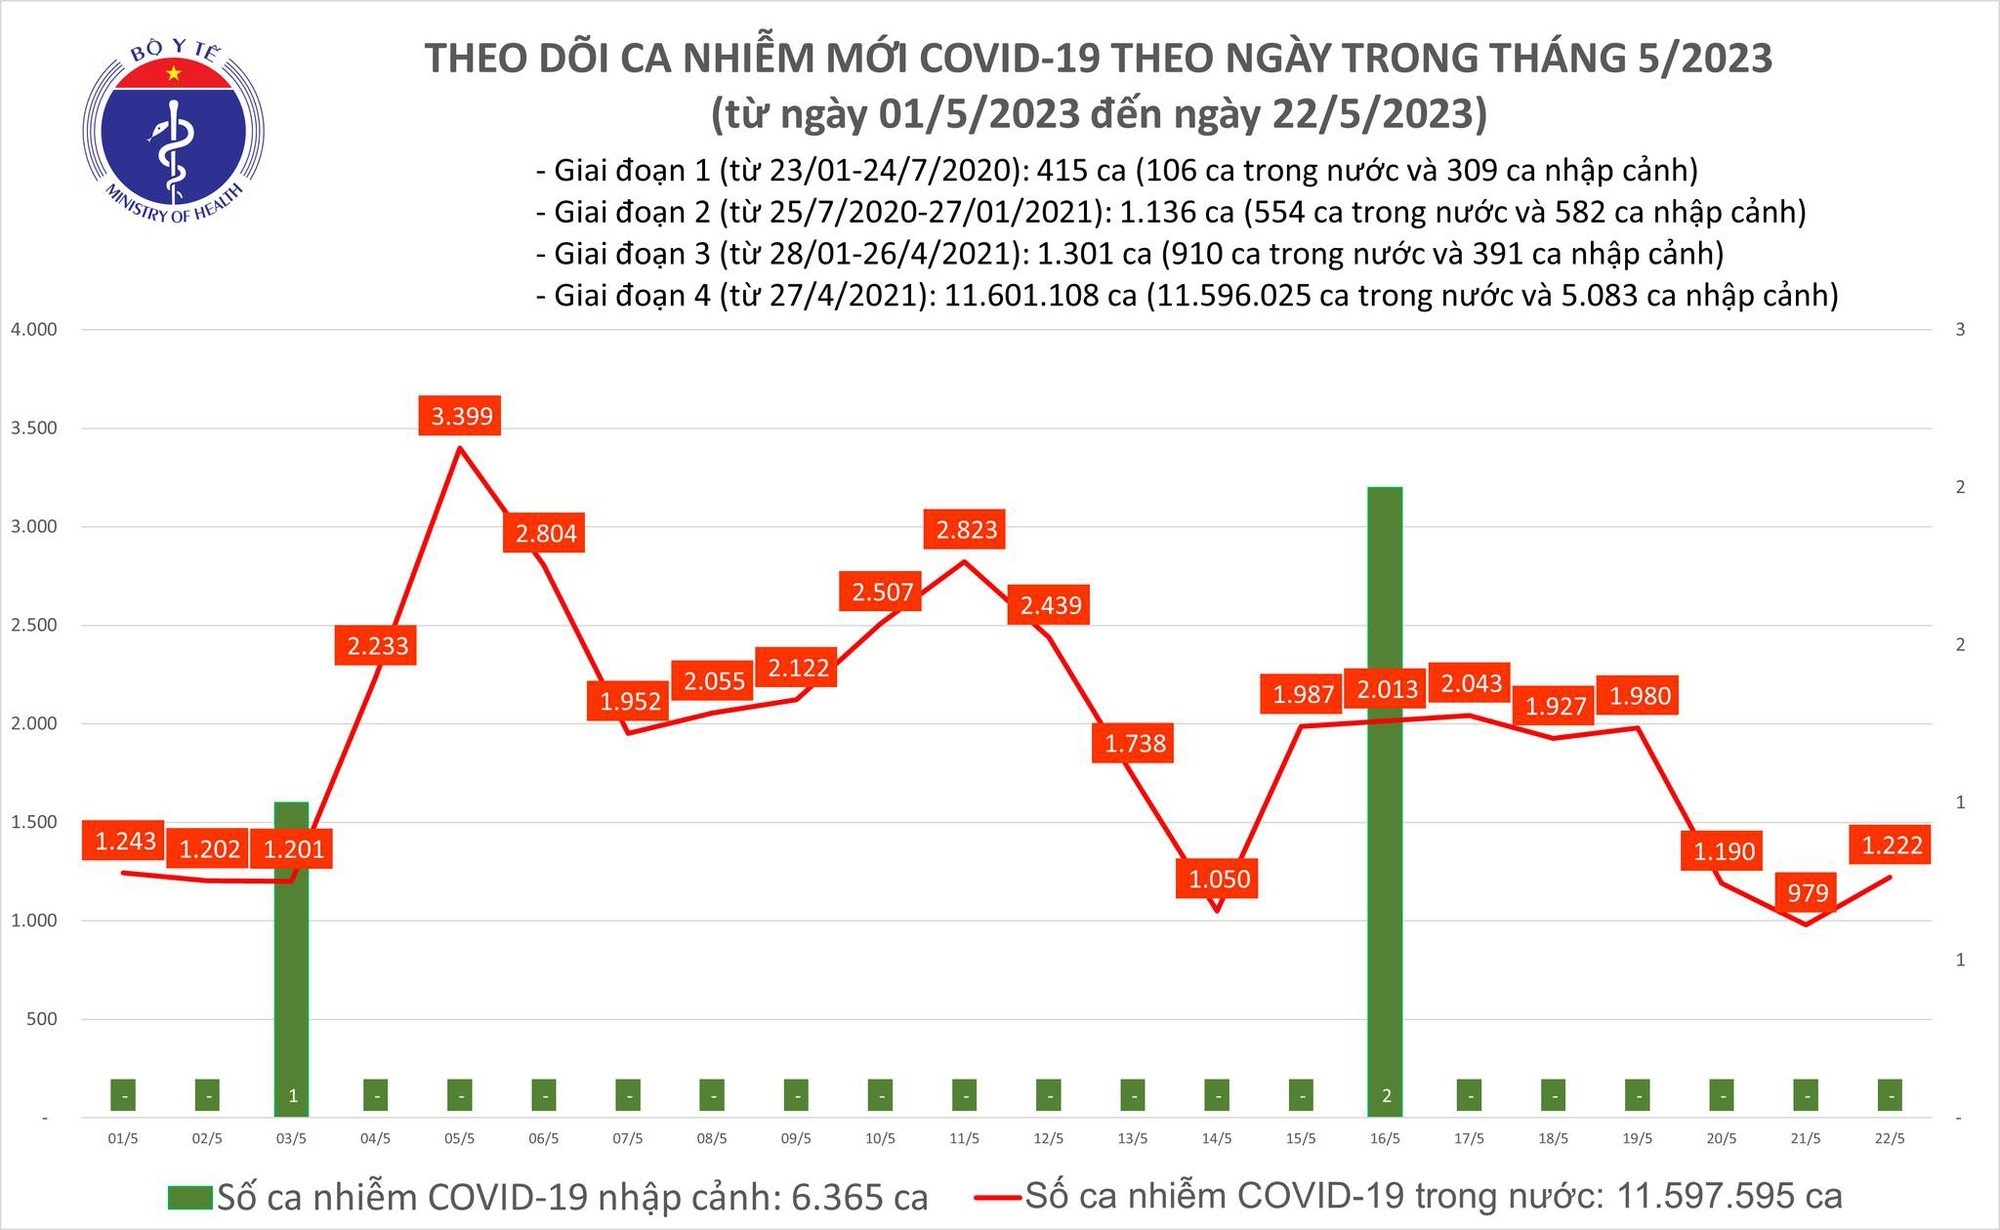 Ngày 22/5: Ca COVID-19 mới tăng lên 1.222, có 1 bệnh nhân ở Hà Nội tử vong - Ảnh 1